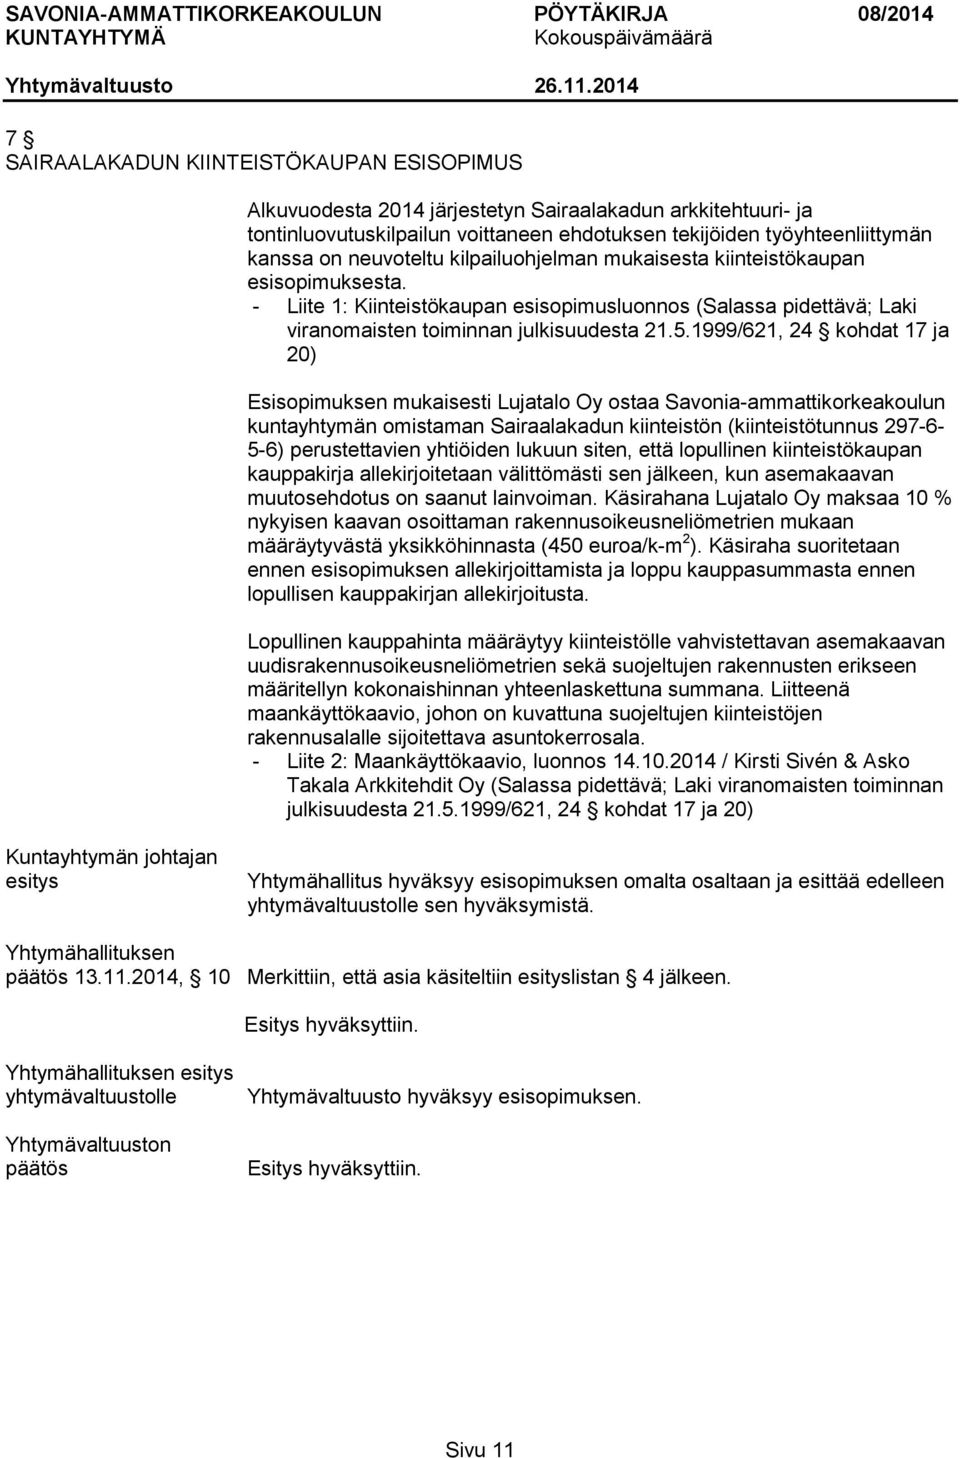 1999/621, 24 kohdat 17 ja 20) Esisopimuksen mukaisesti Lujatalo Oy ostaa Savonia-ammattikorkeakoulun kuntayhtymän omistaman Sairaalakadun kiinteistön (kiinteistötunnus 297-6- 5-6) perustettavien